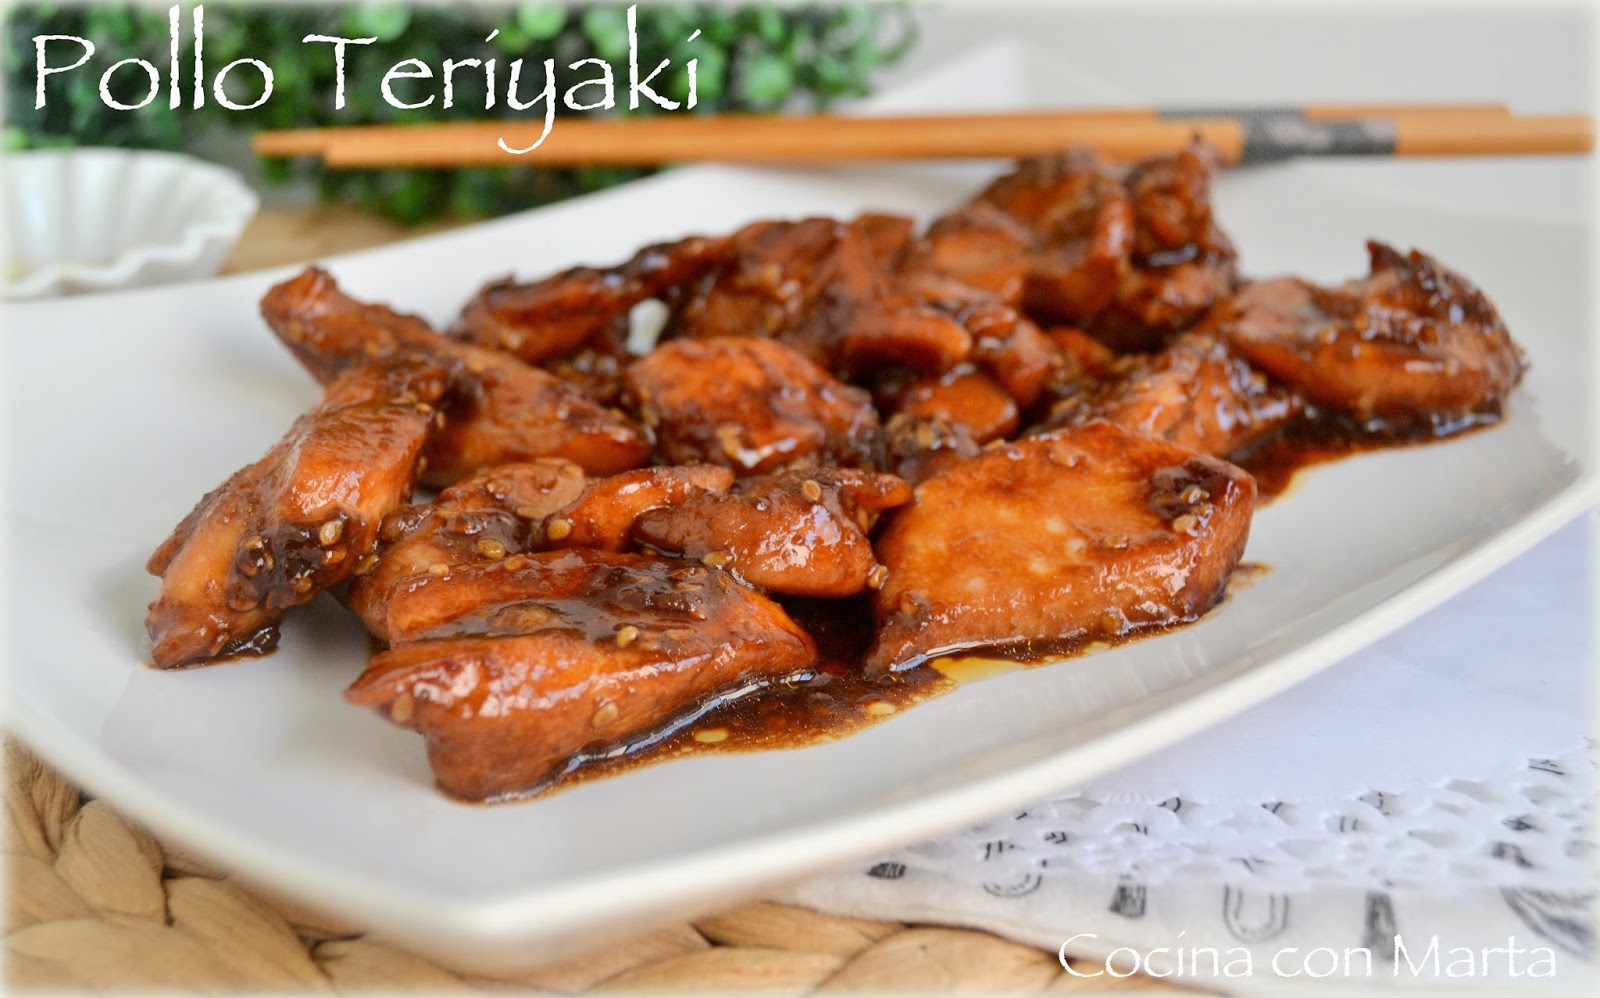 Receta de pollo teriyaki casera, con salsa de soja. Fácil y rápida.